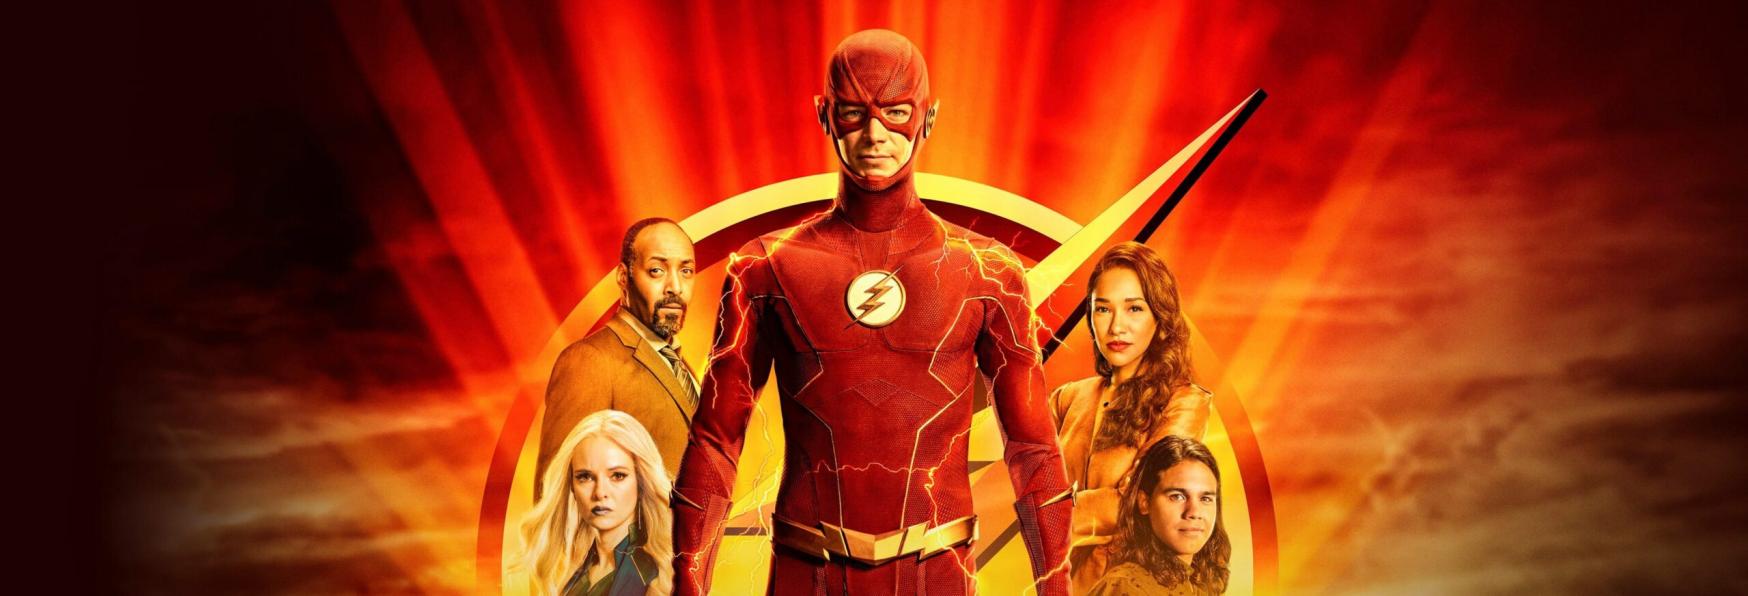 The Flash 9: pubblicato il Trailer Ufficiale della Stagione Finale